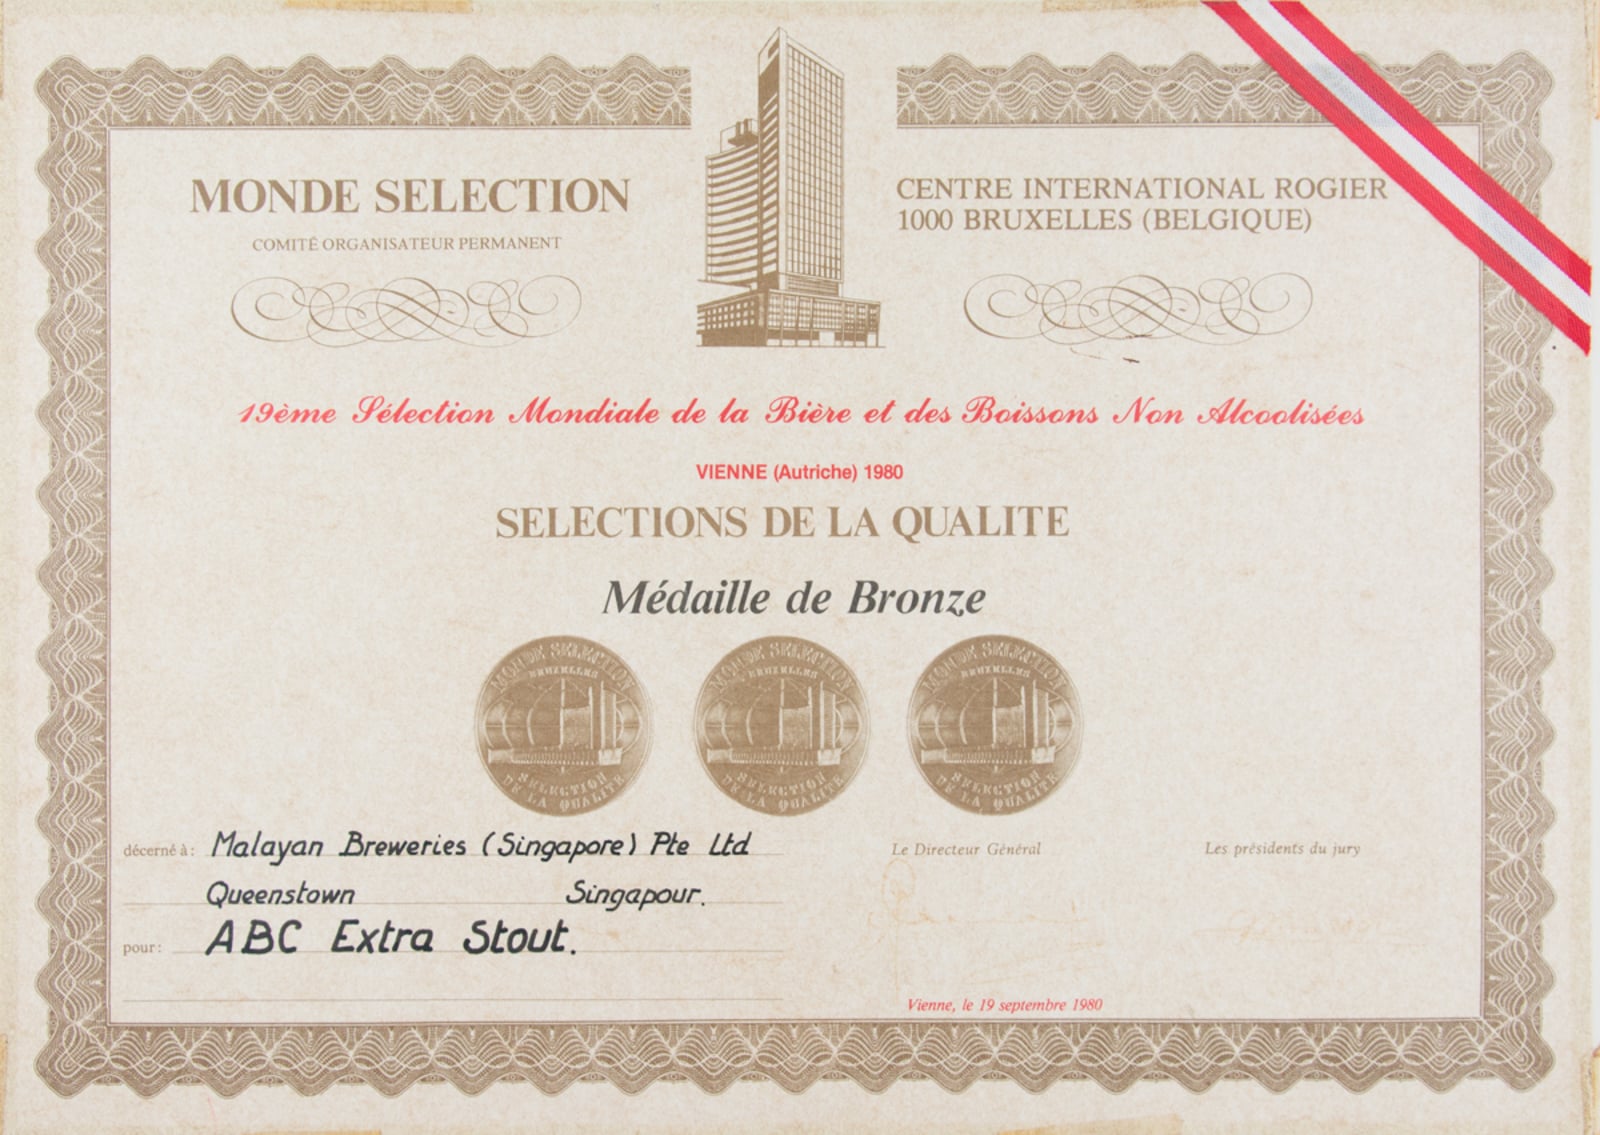 ABC Extra Stout Médaille de Bronze, Monde Selection Certificate 1980